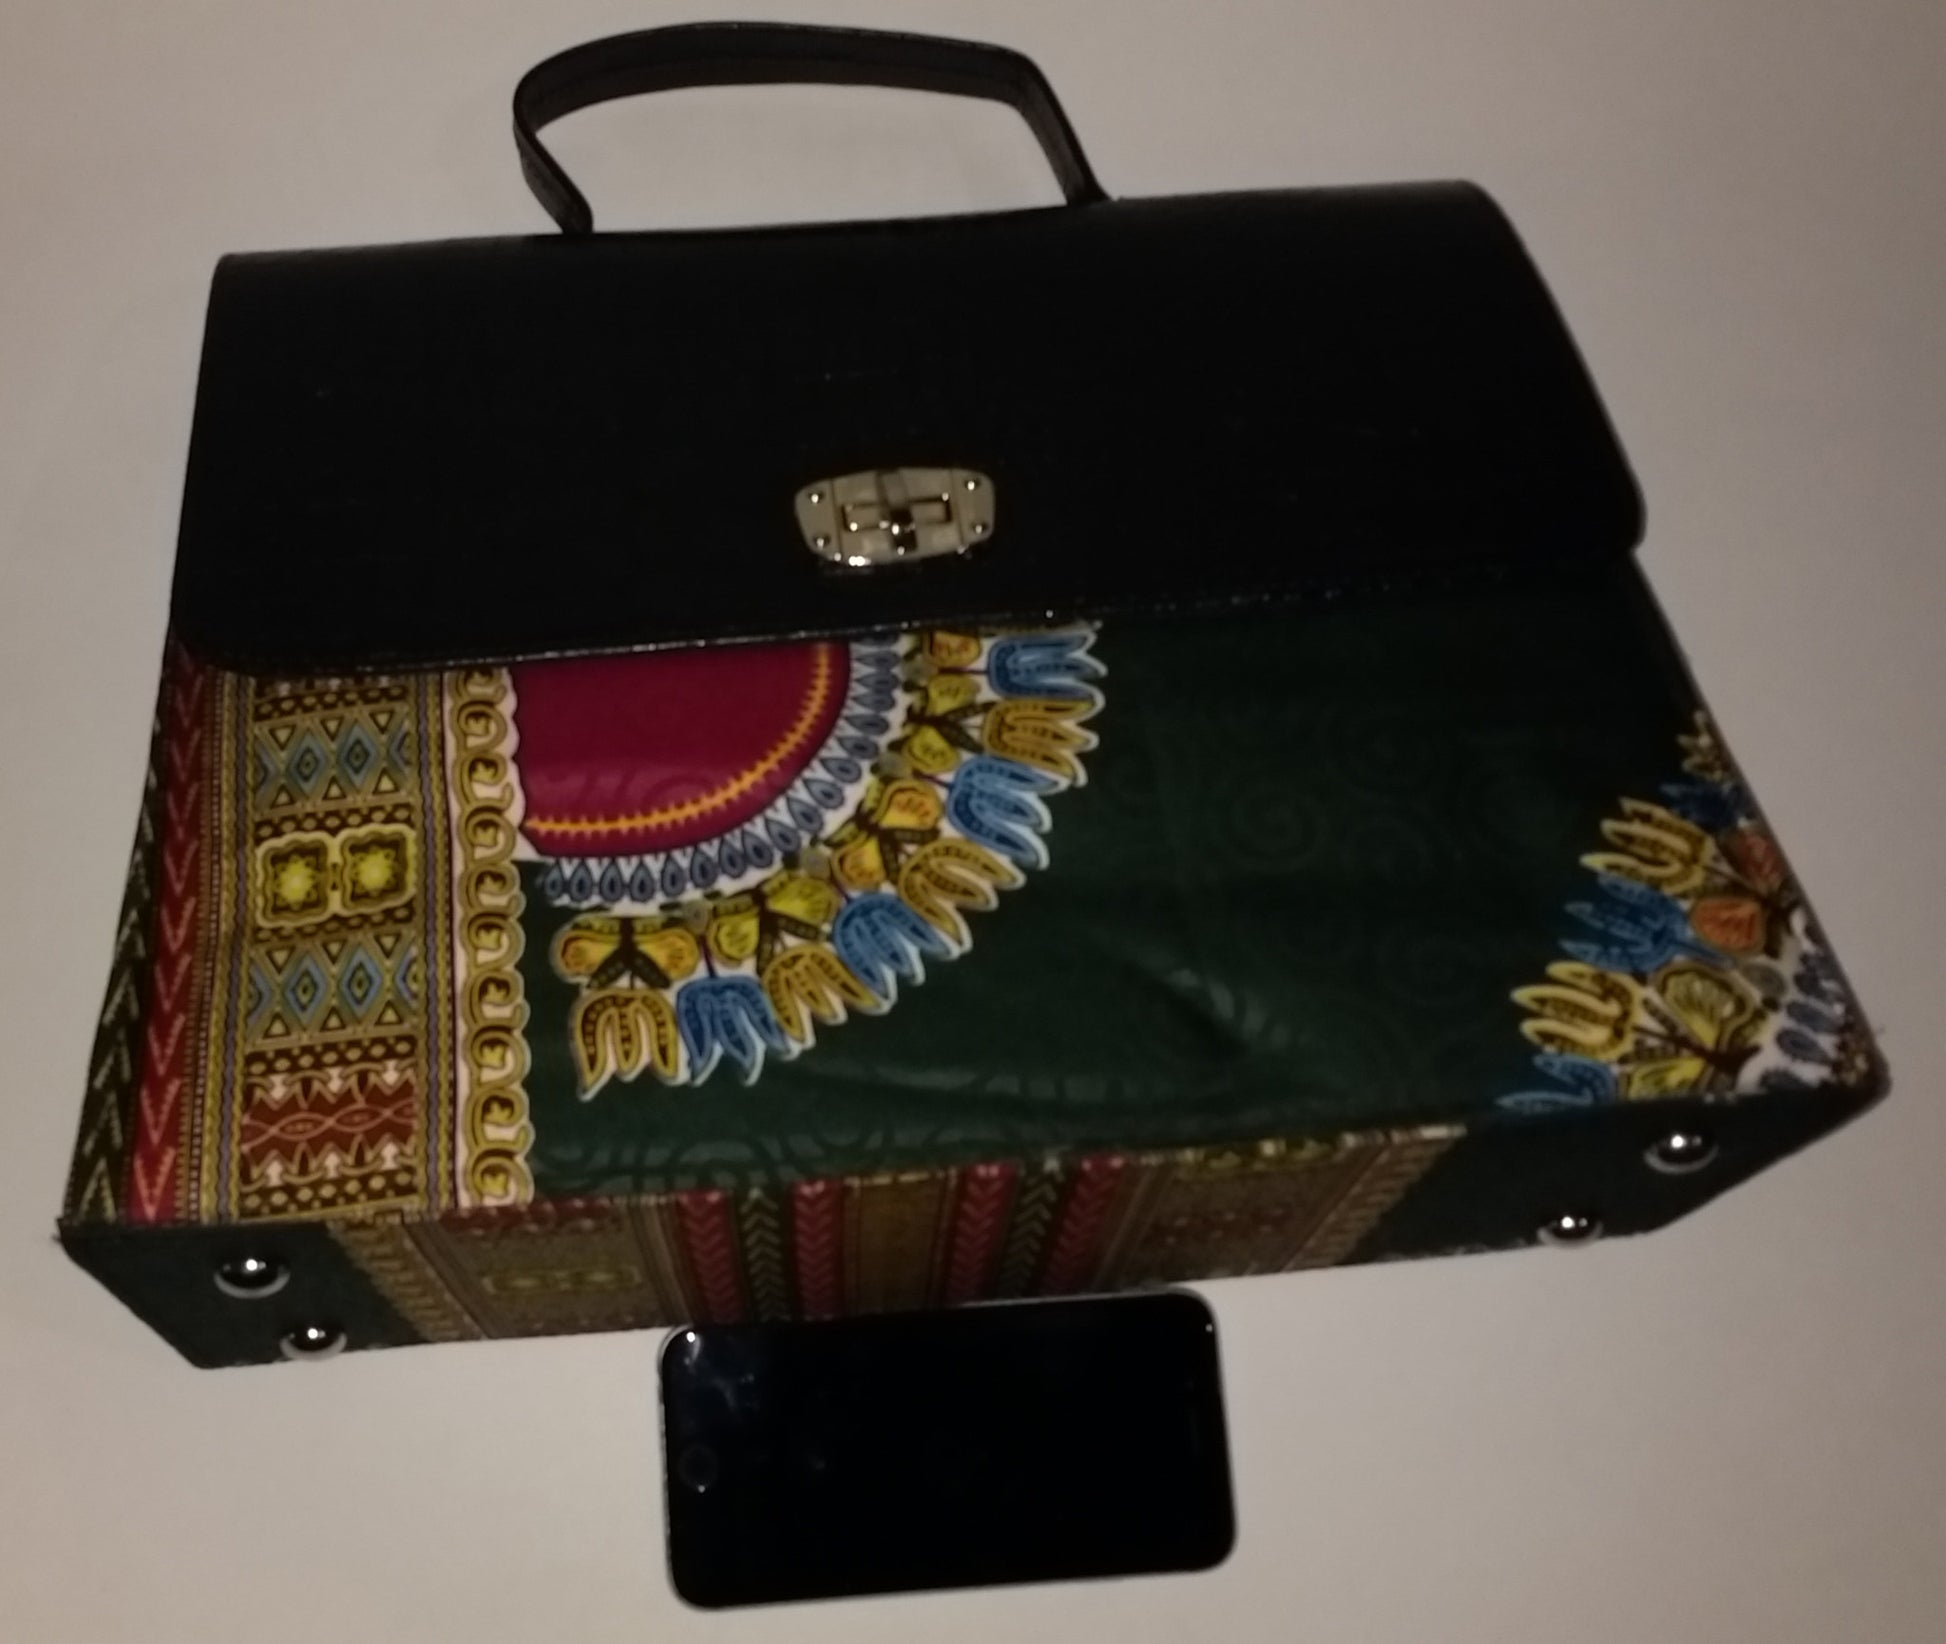 Ankara Handbag - Nubian Goods